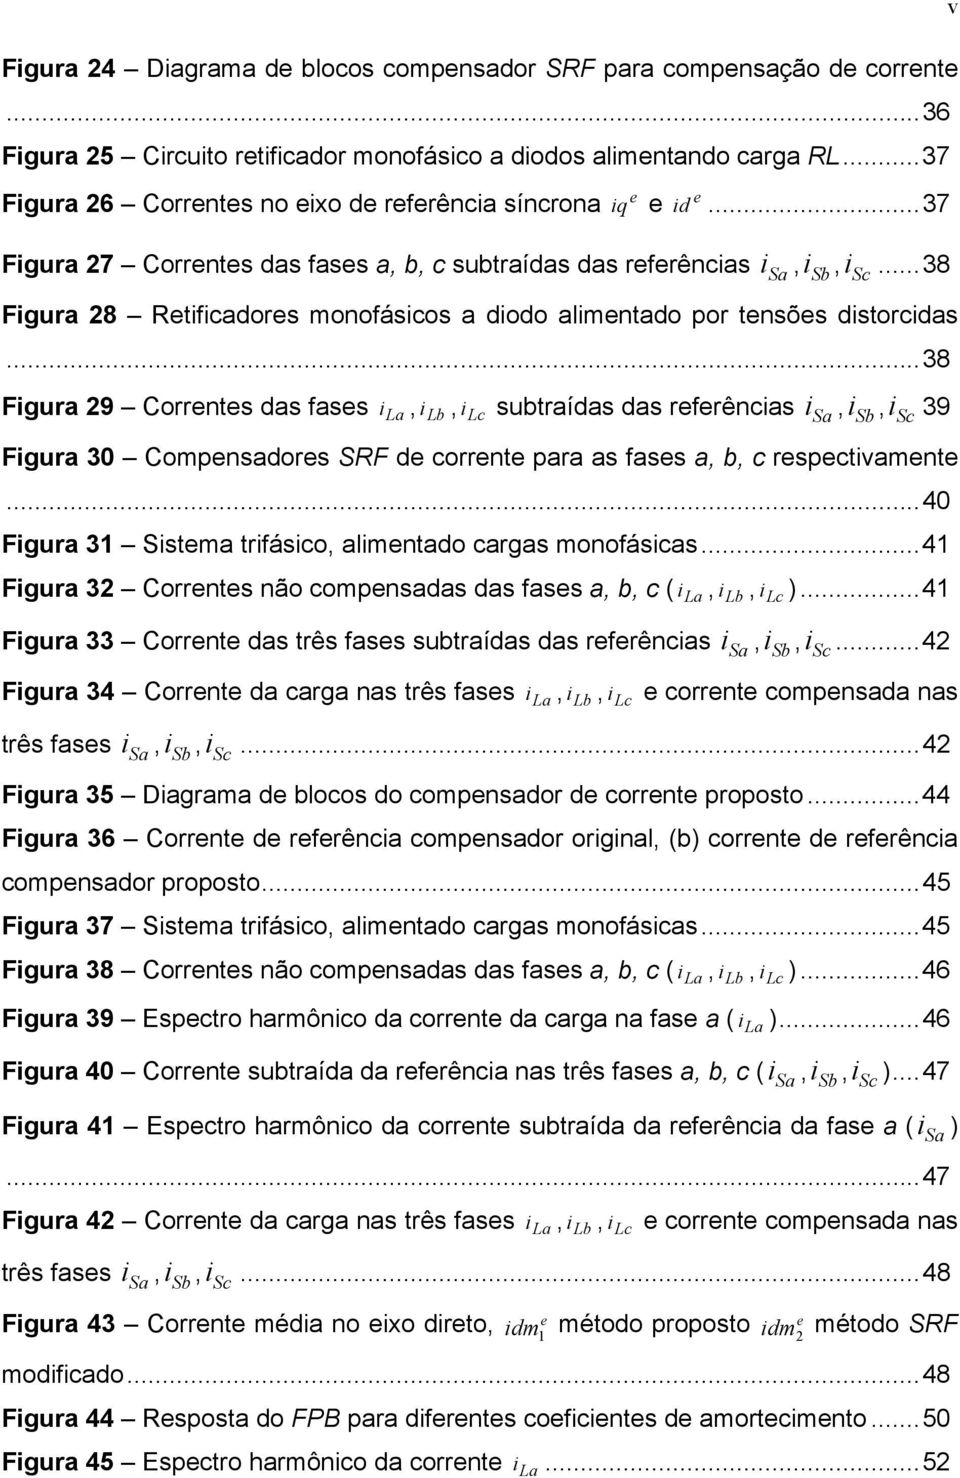 ..38 Figura 29 Corrnts das fass i La, i Lb, i Lc subtraídas das rfrências i Sa, i Sb, i Sc 39 Figura 30 Compnsadors SRF d corrnt para as fass a, b, c rspctivamnt.